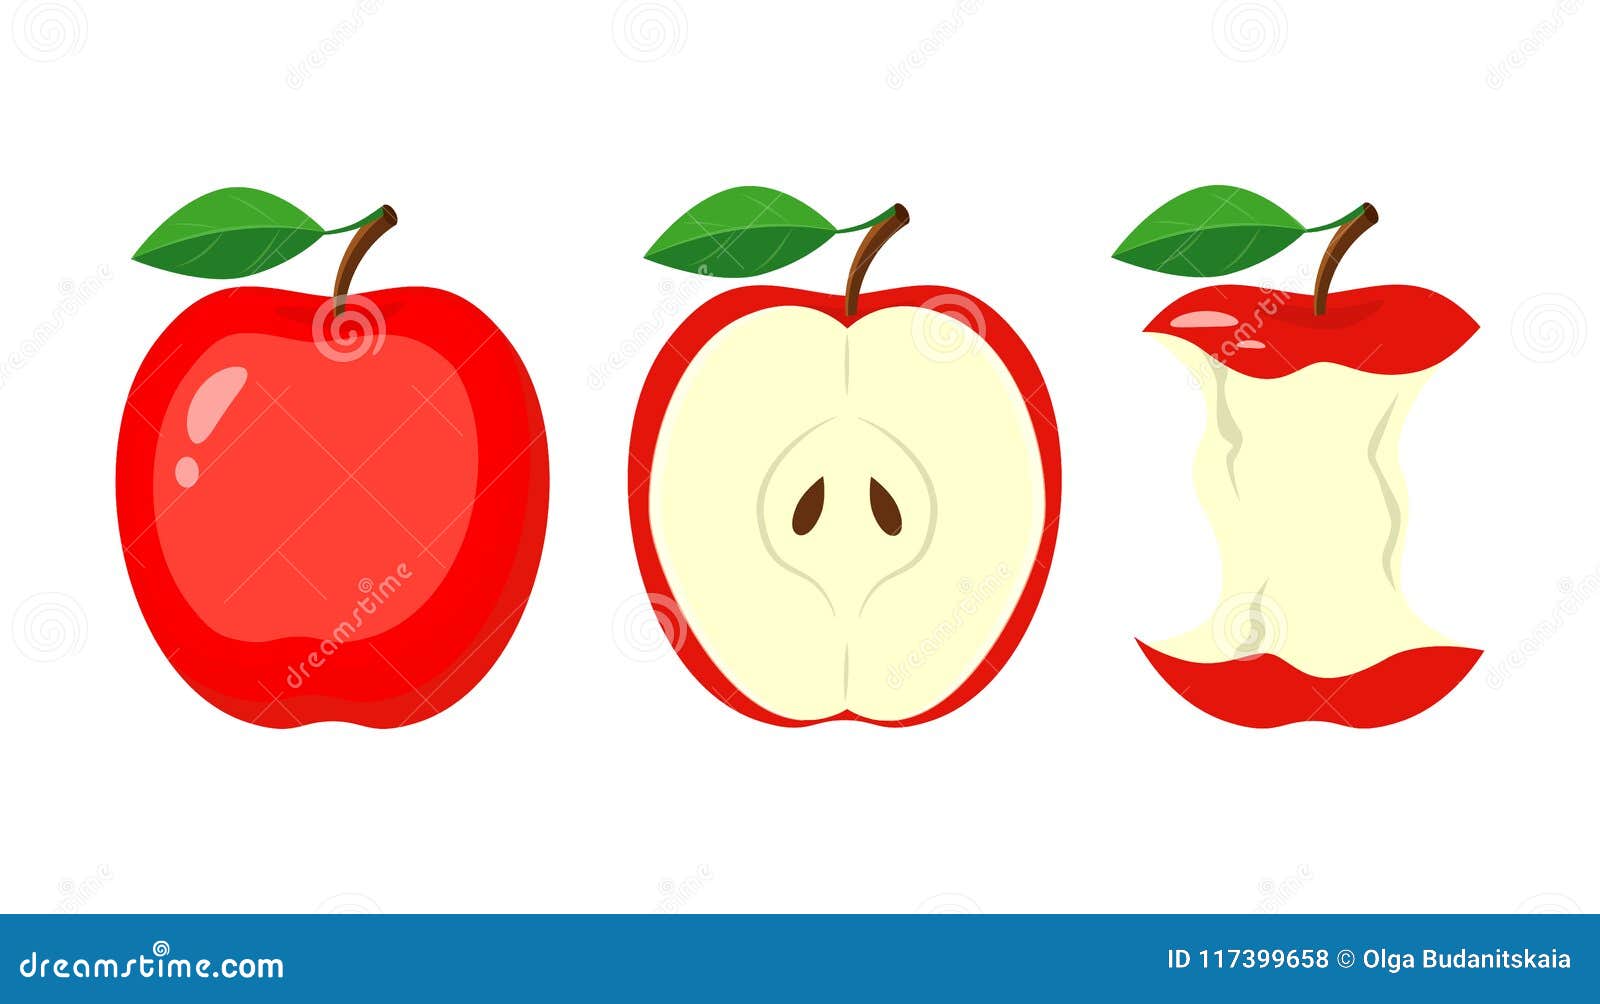 Яблоко адоб иллюстратор